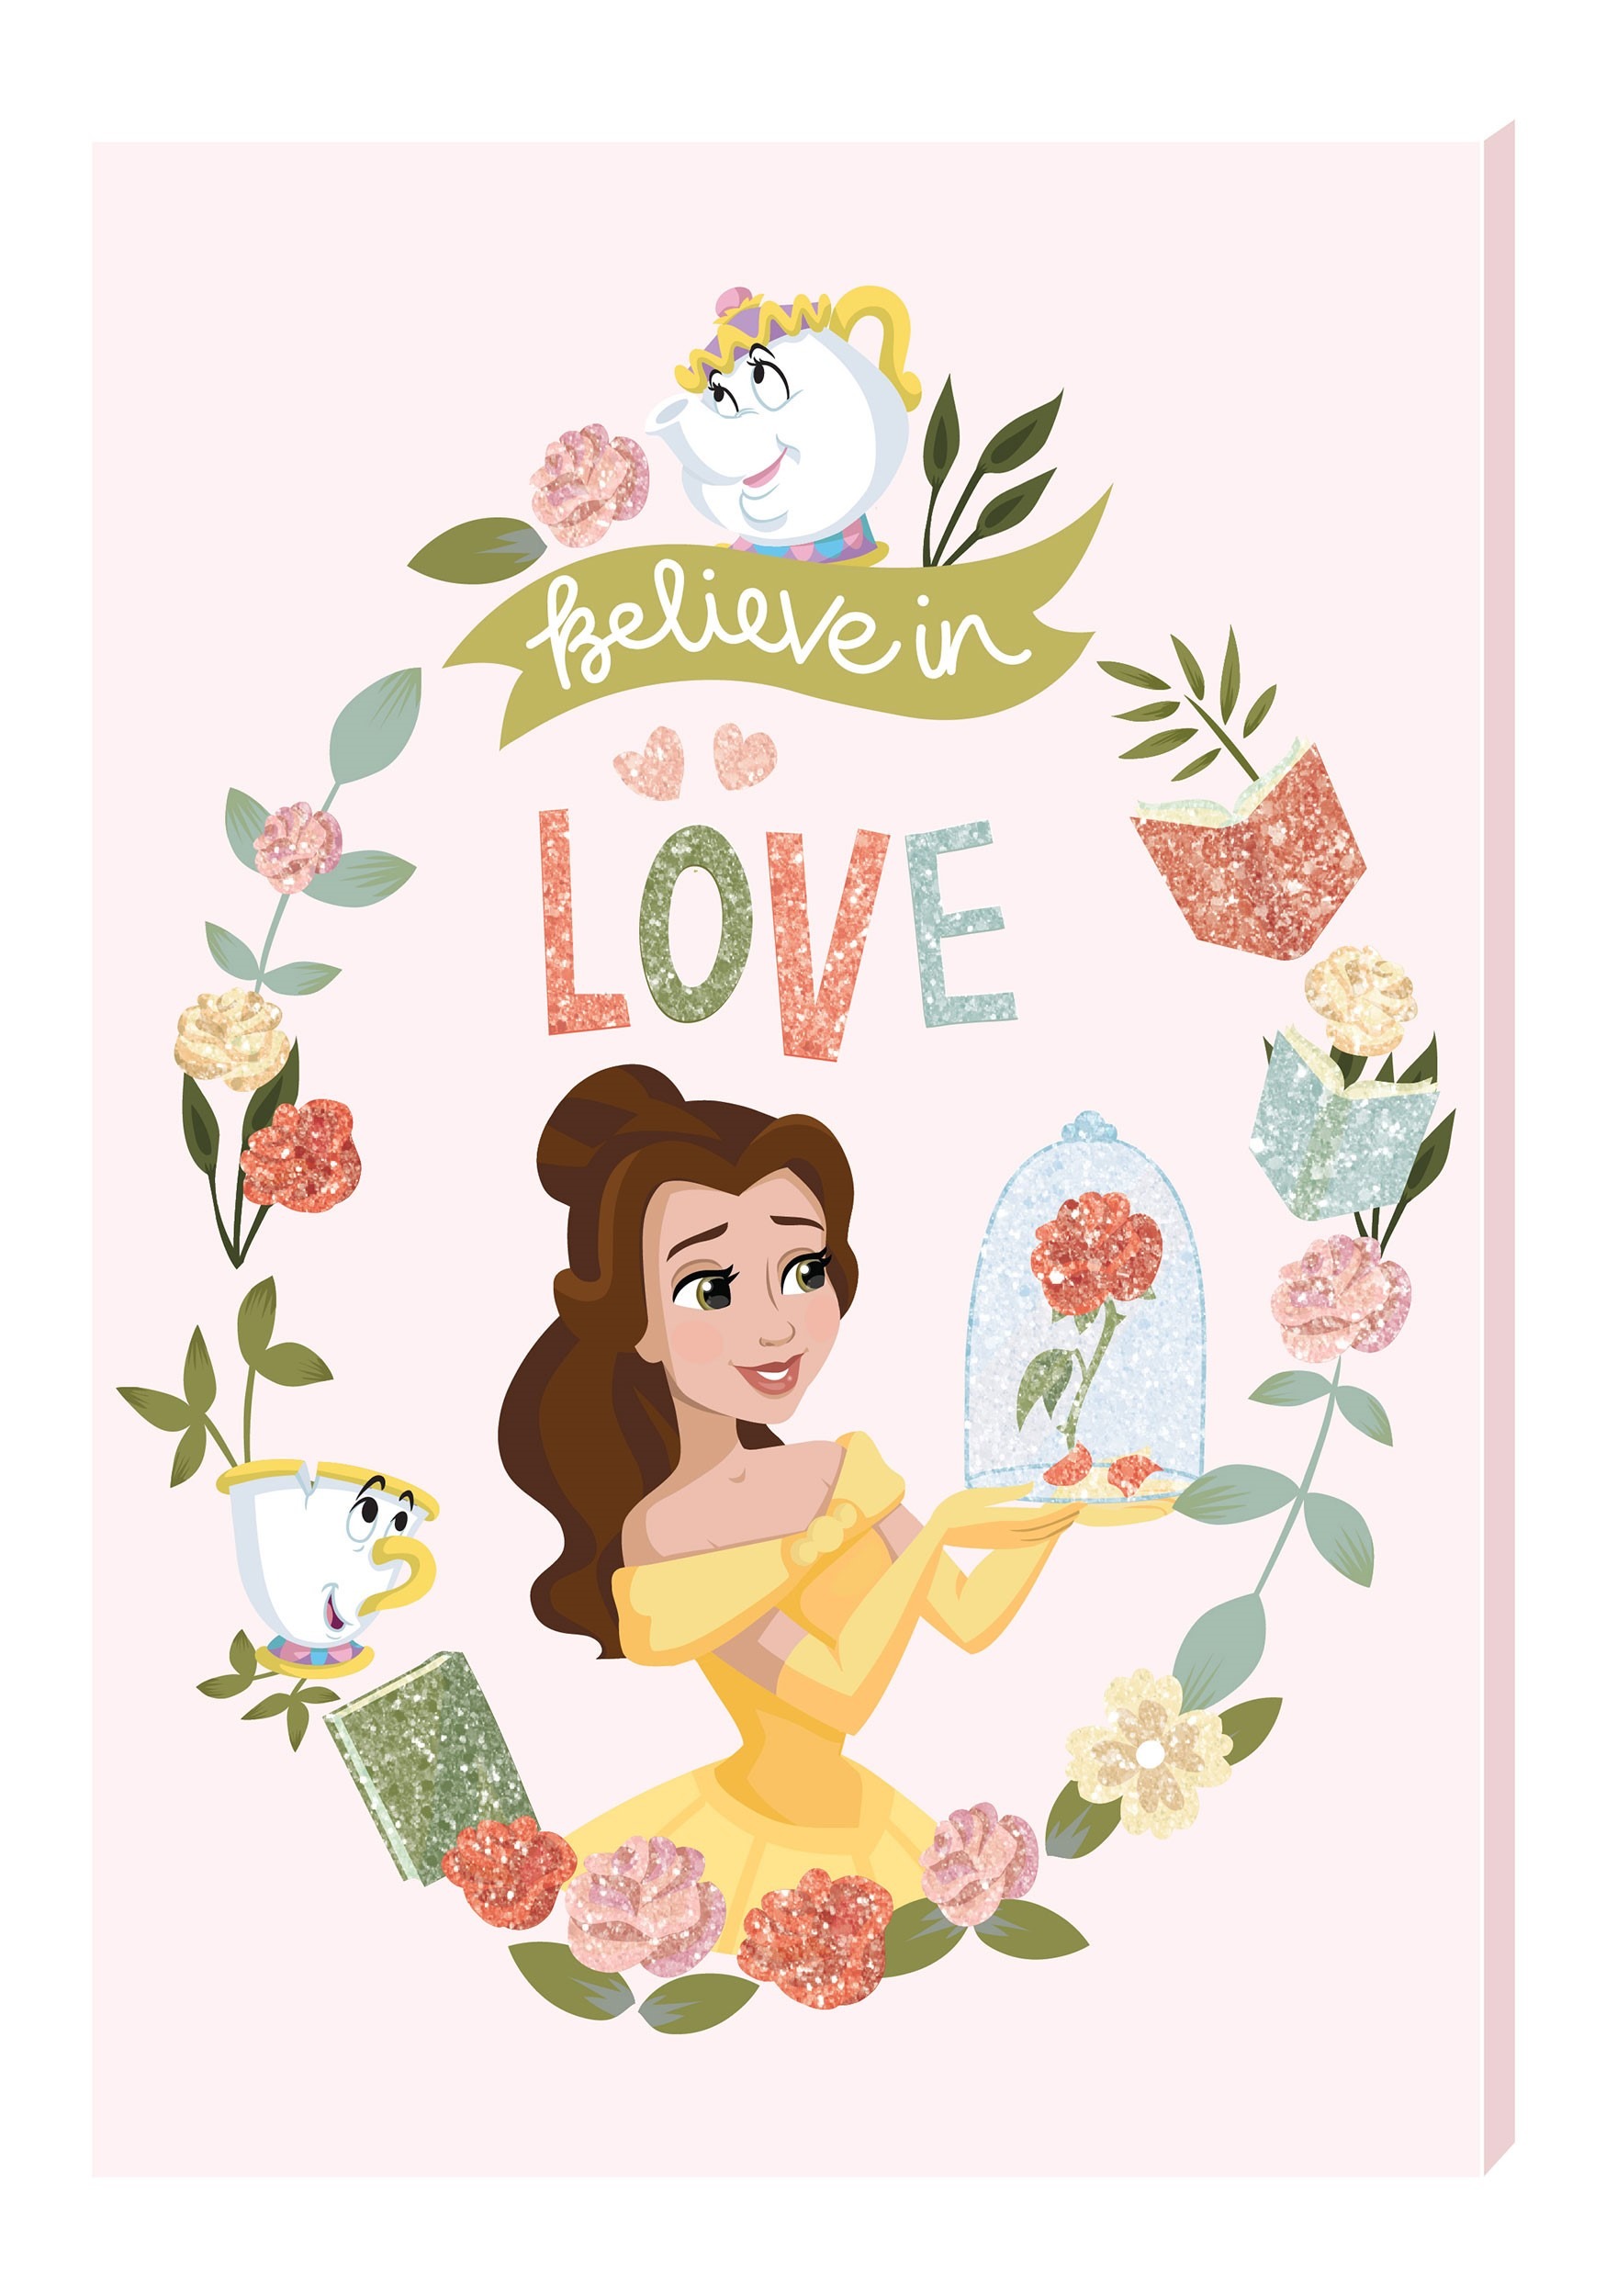 Disney's Belle Glitter Card